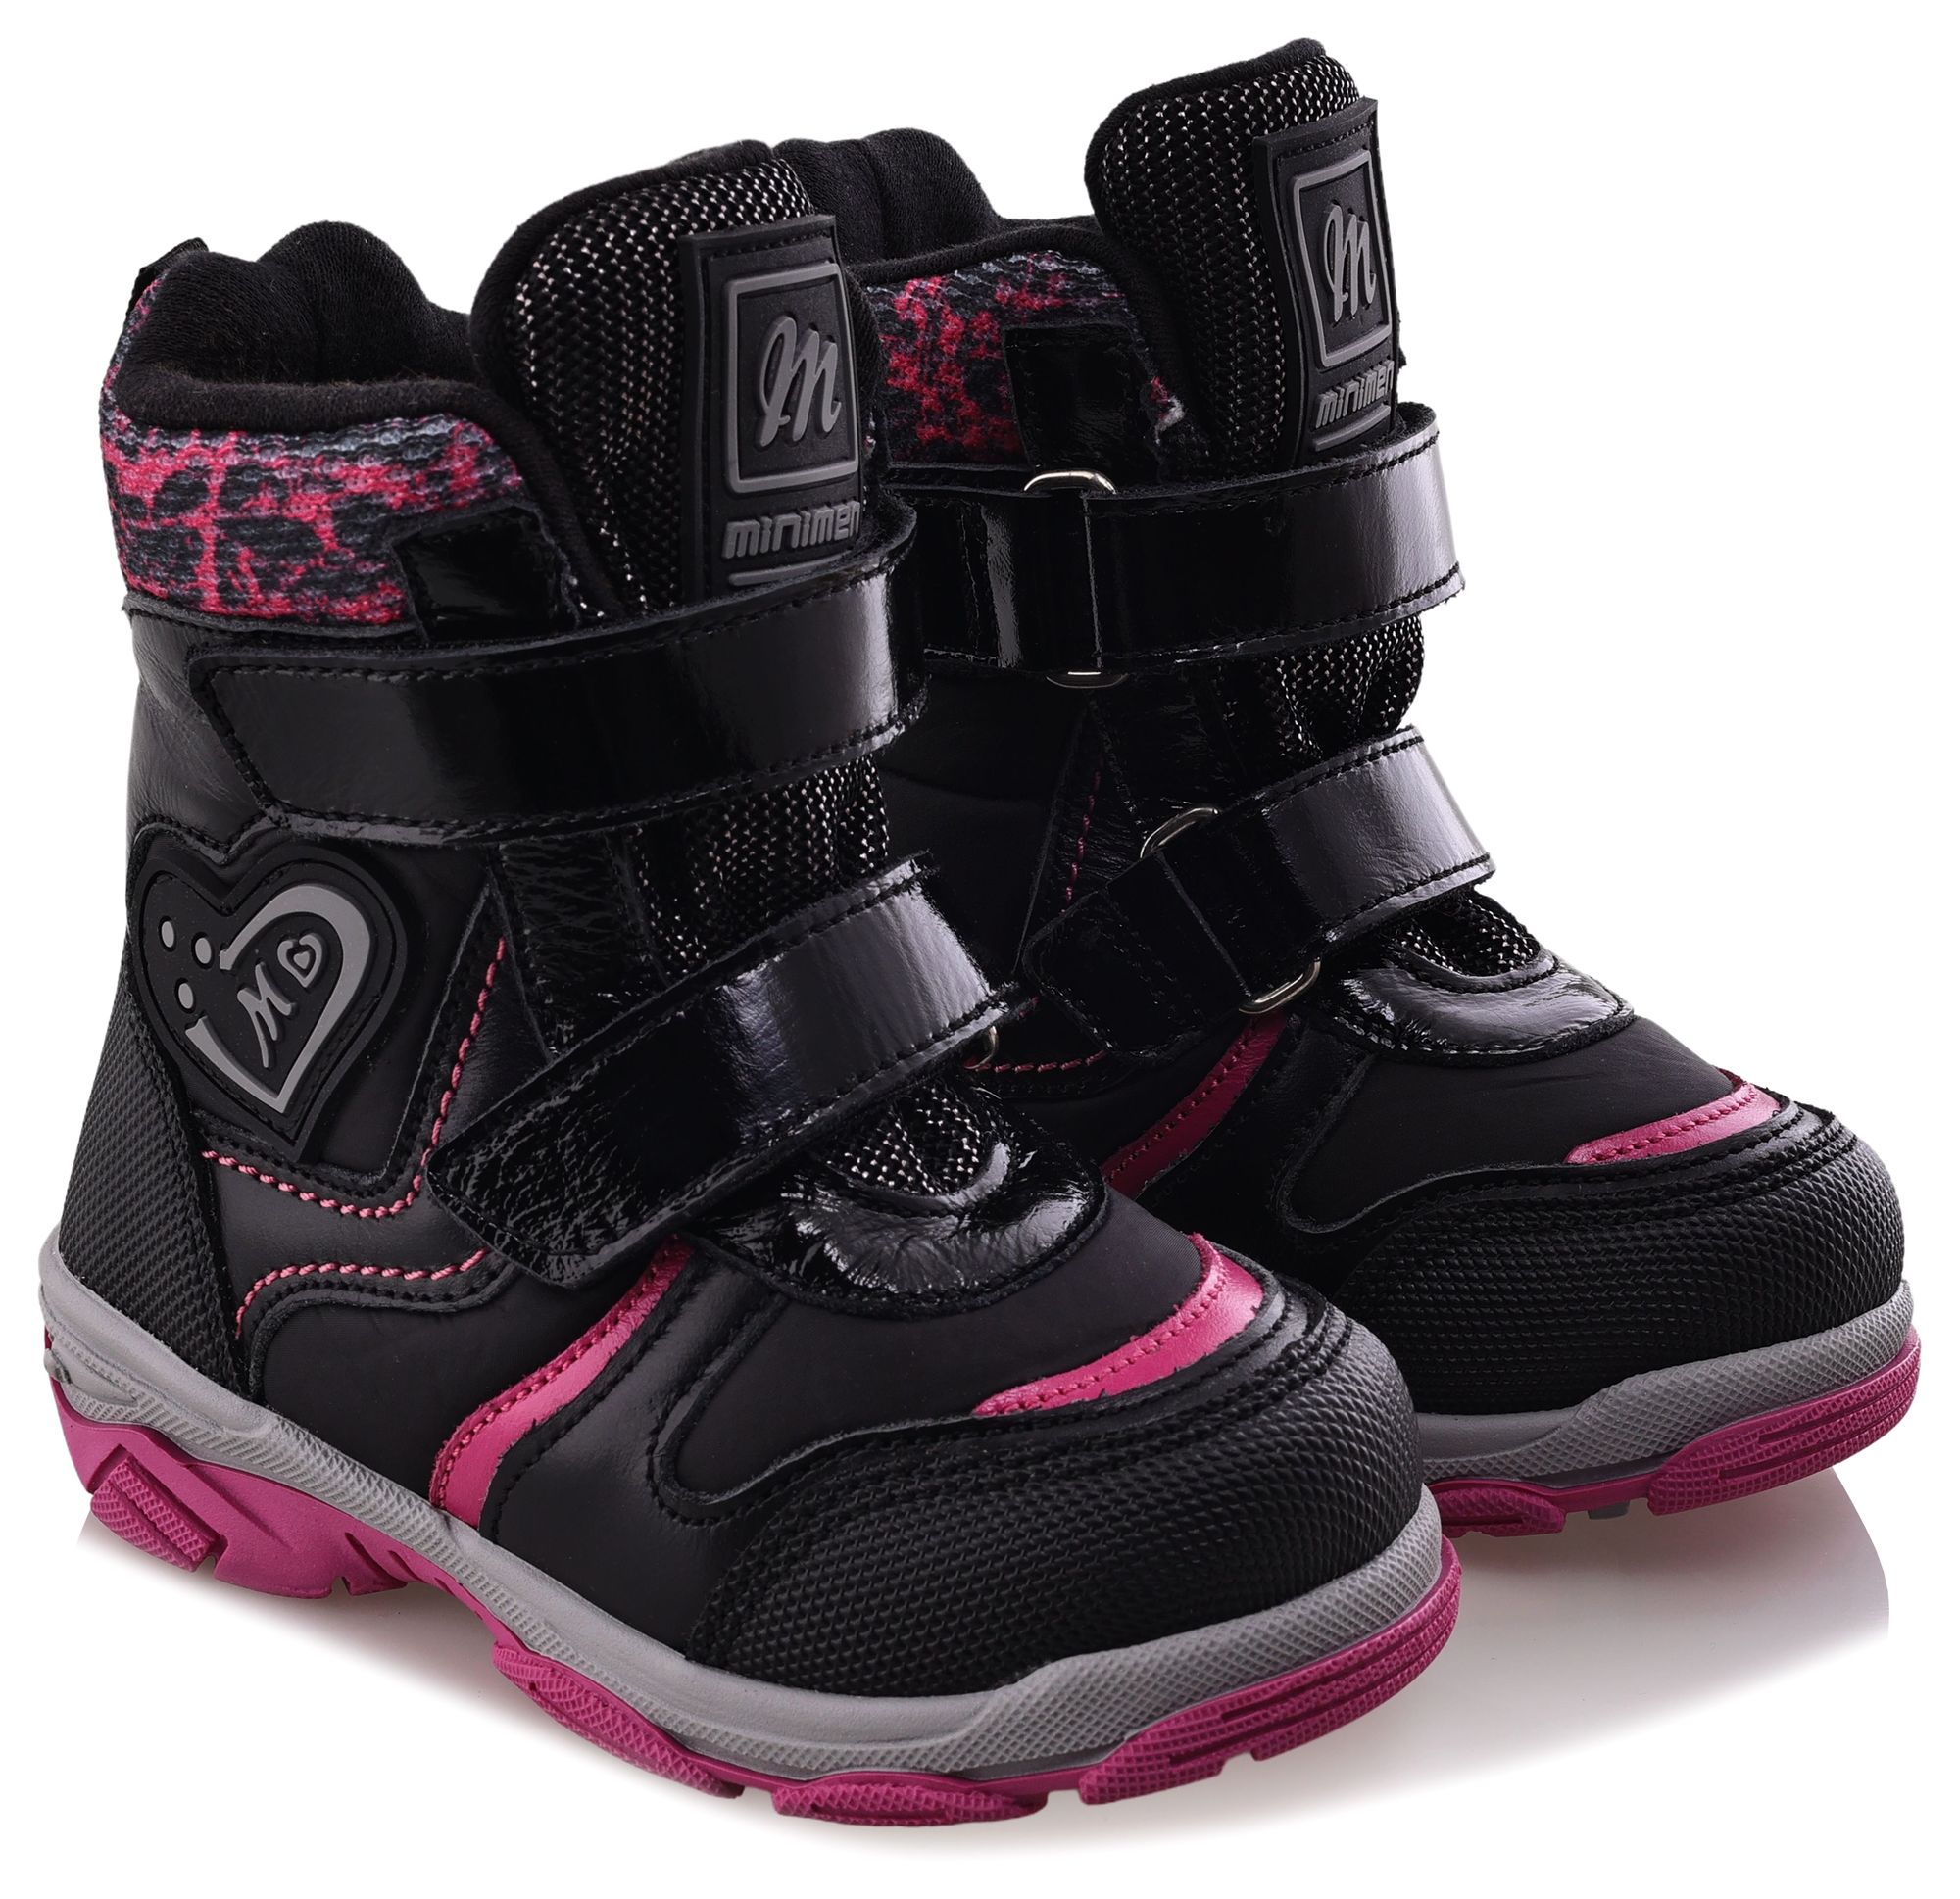 Ботинки Minimen для девочек, чёрные, размер 29, 2656-53-23B-01 ботинки minimen для девочек розовые размер 27 2656 53 23b 02